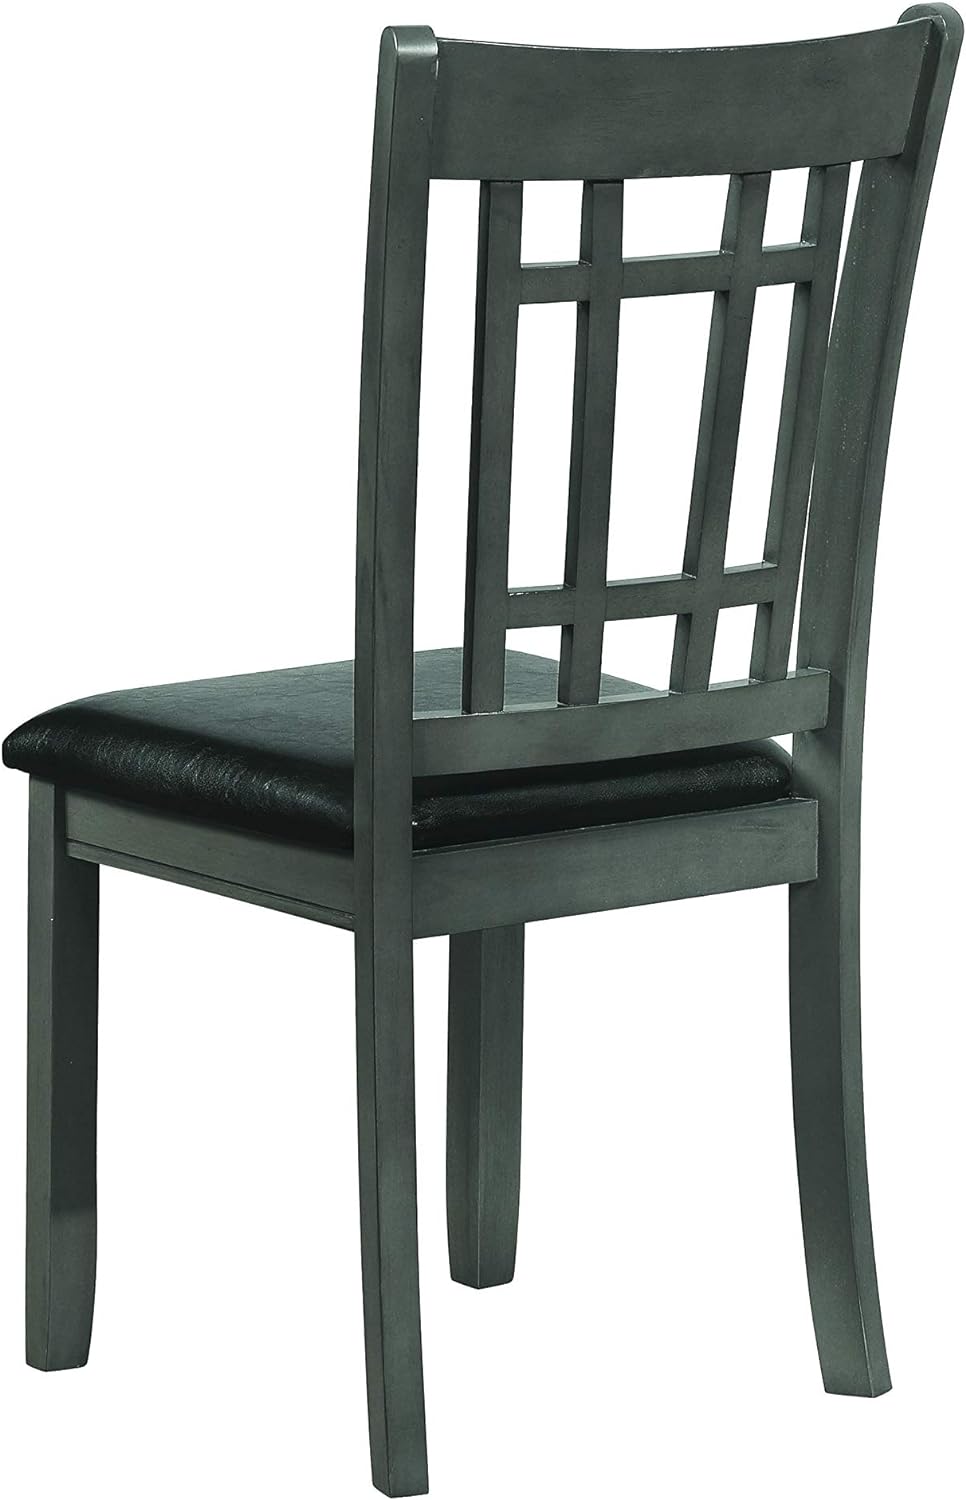 Furniture LAVON 108212 Juego de 2 sillas auxiliares acolchadas color espresso y